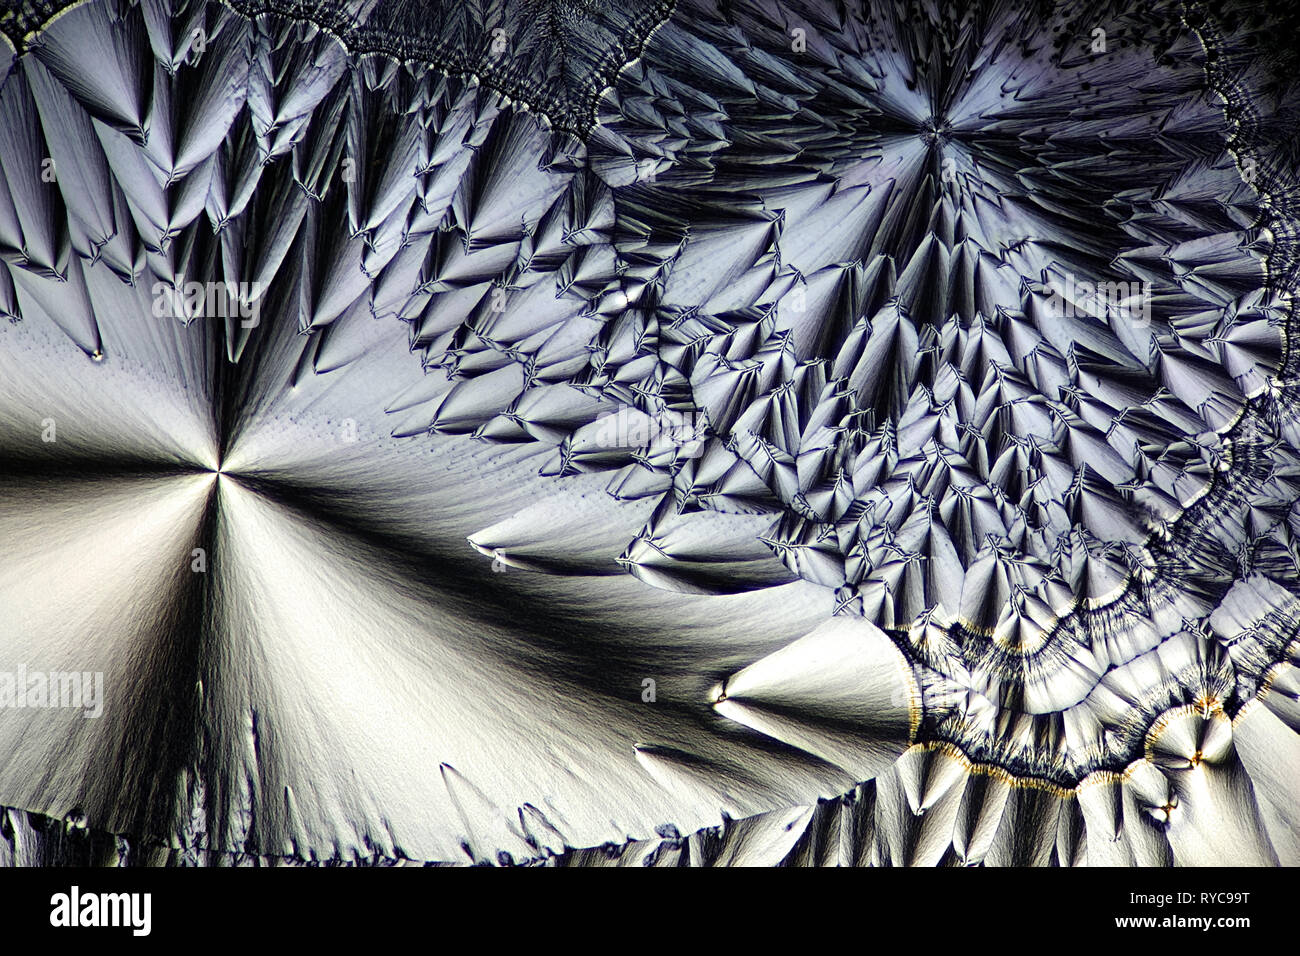 Chimica e tecnica. Questo è acido ascorbico, comunemente noto come Vitamina C, fotografato in forma cristallizzata Foto Stock